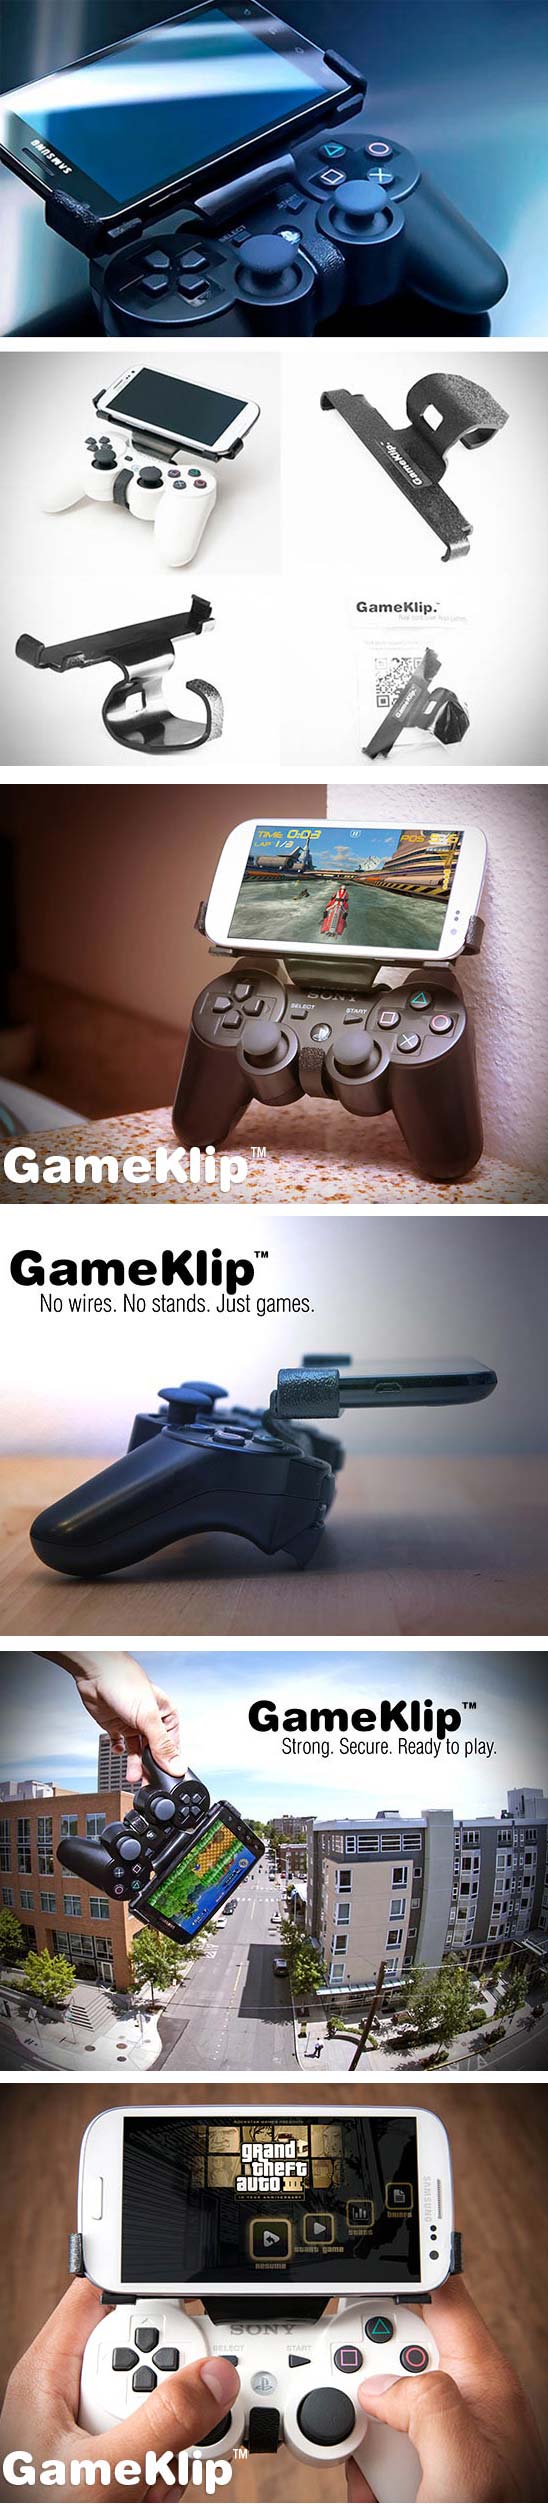 GameKilp поможет обрести нормальное управление в играх на смартфонах